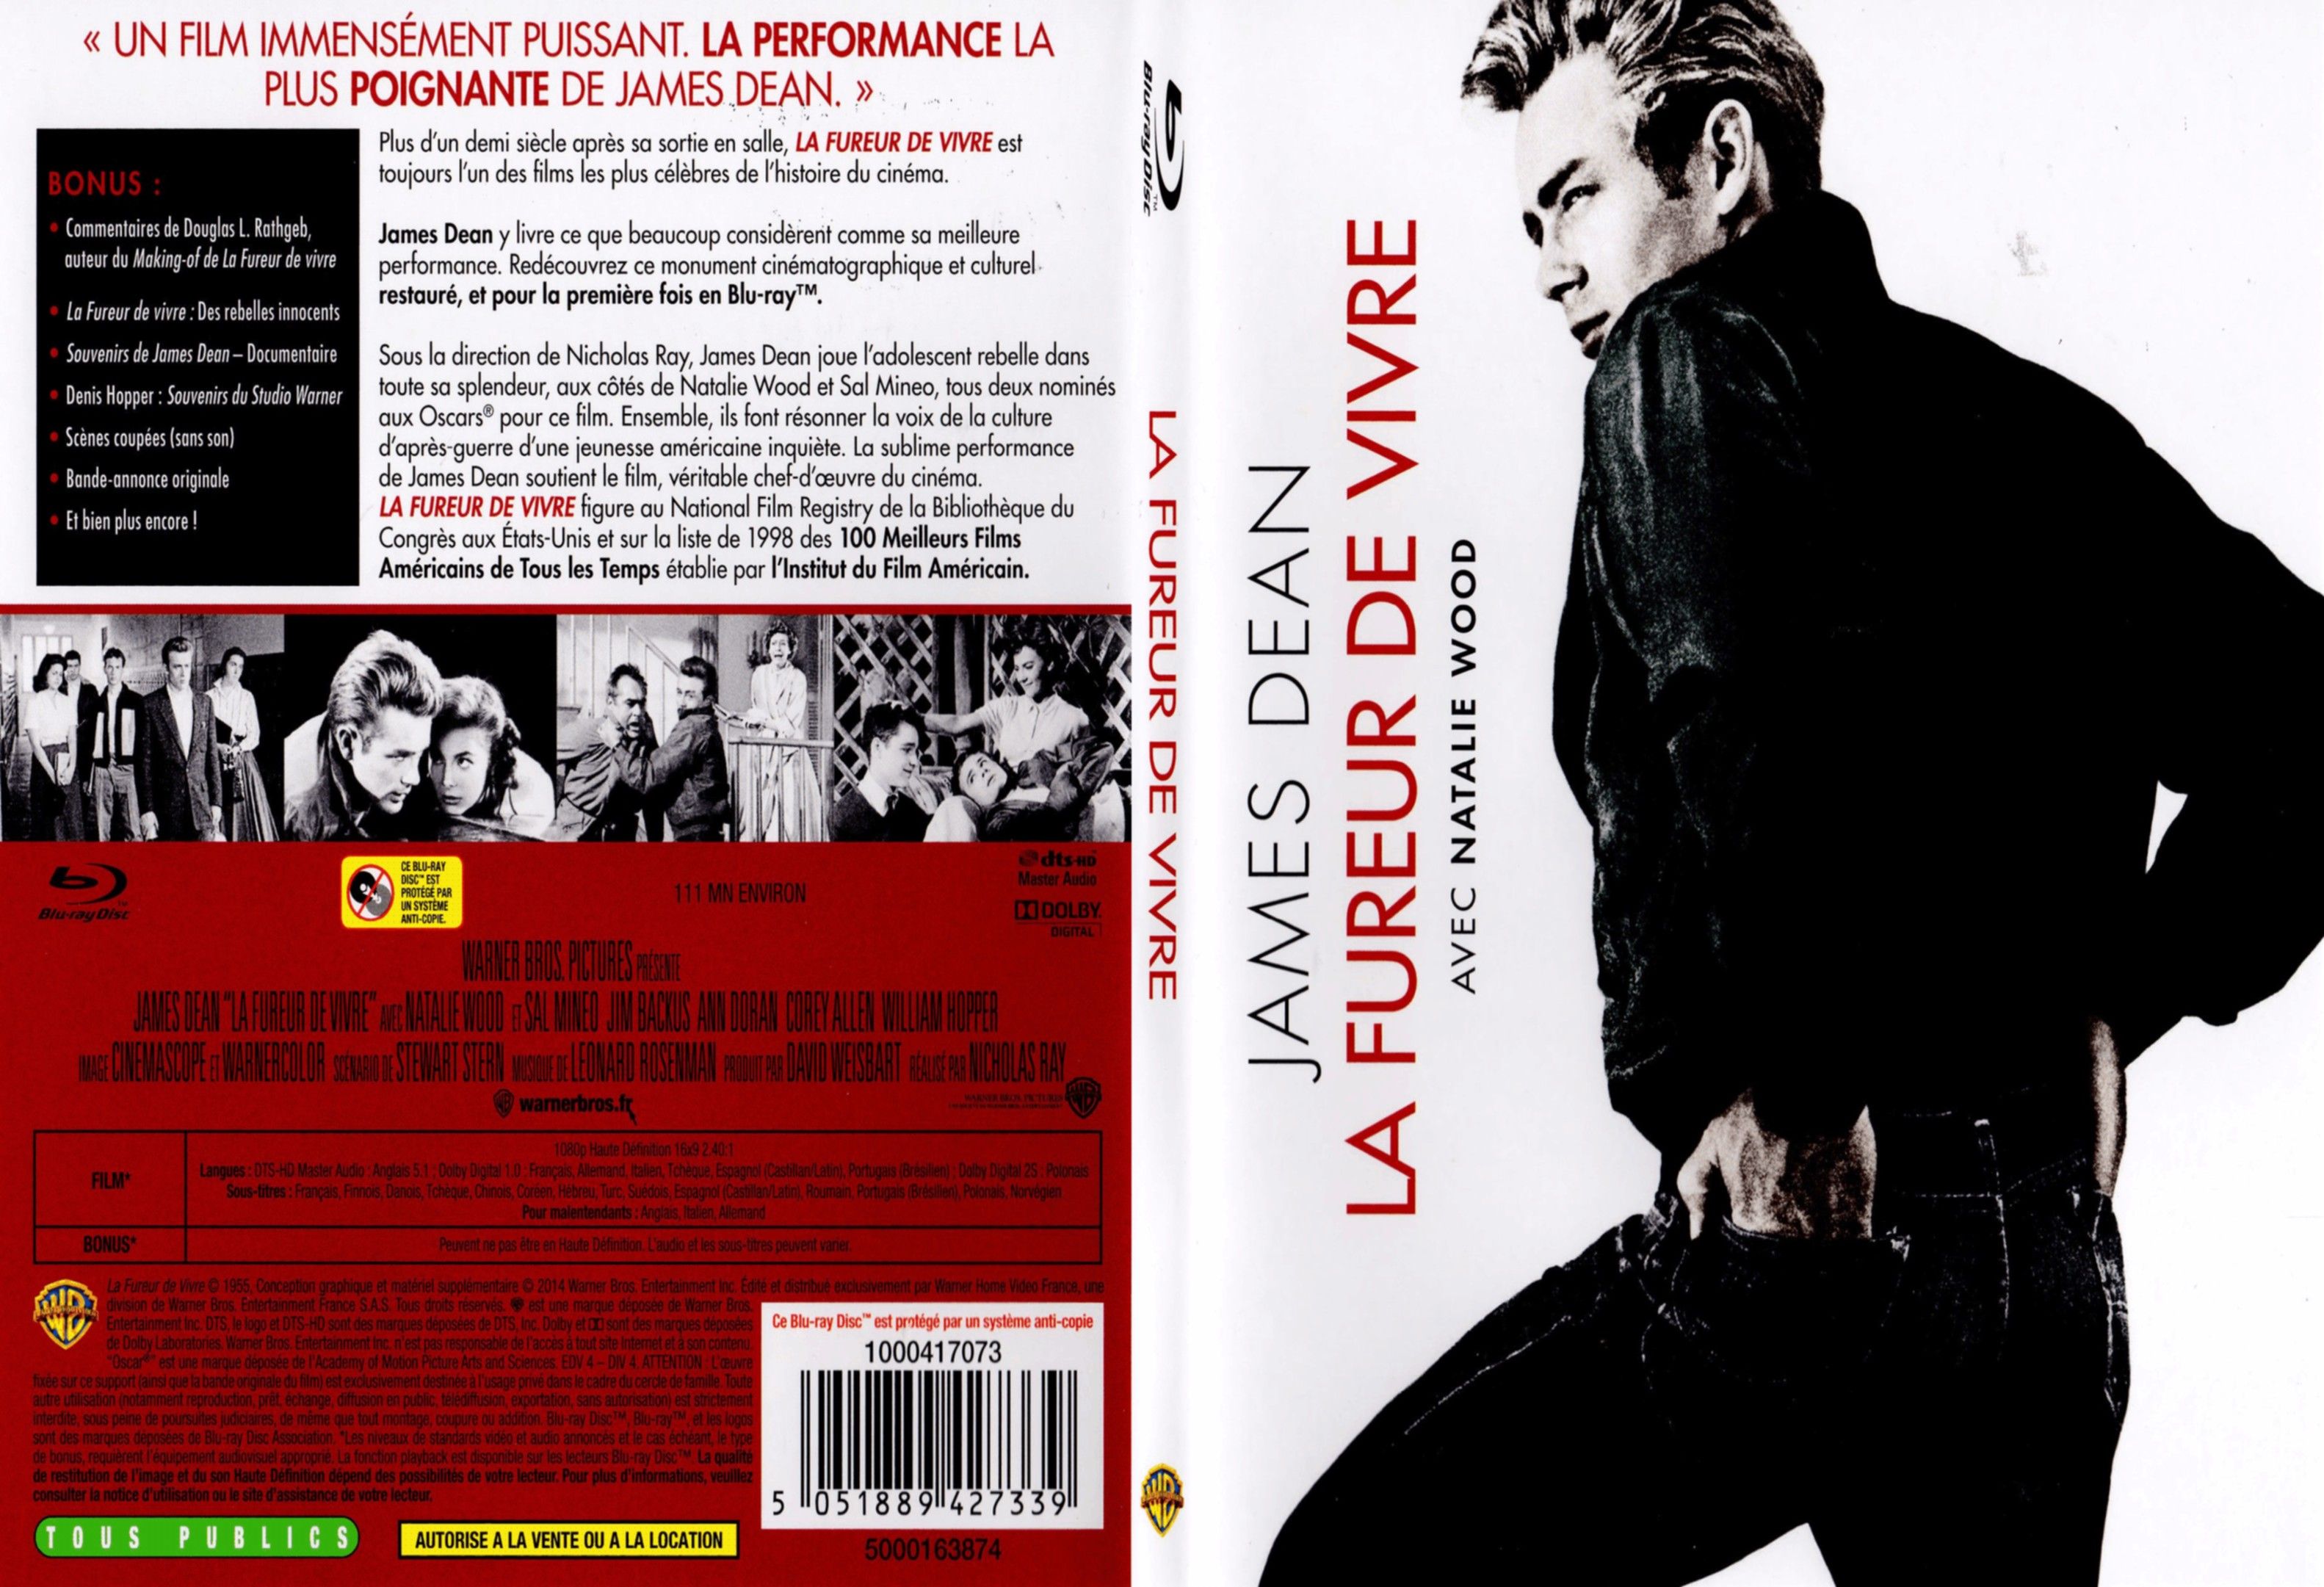 Jaquette DVD La fureur de vivre - SLIM